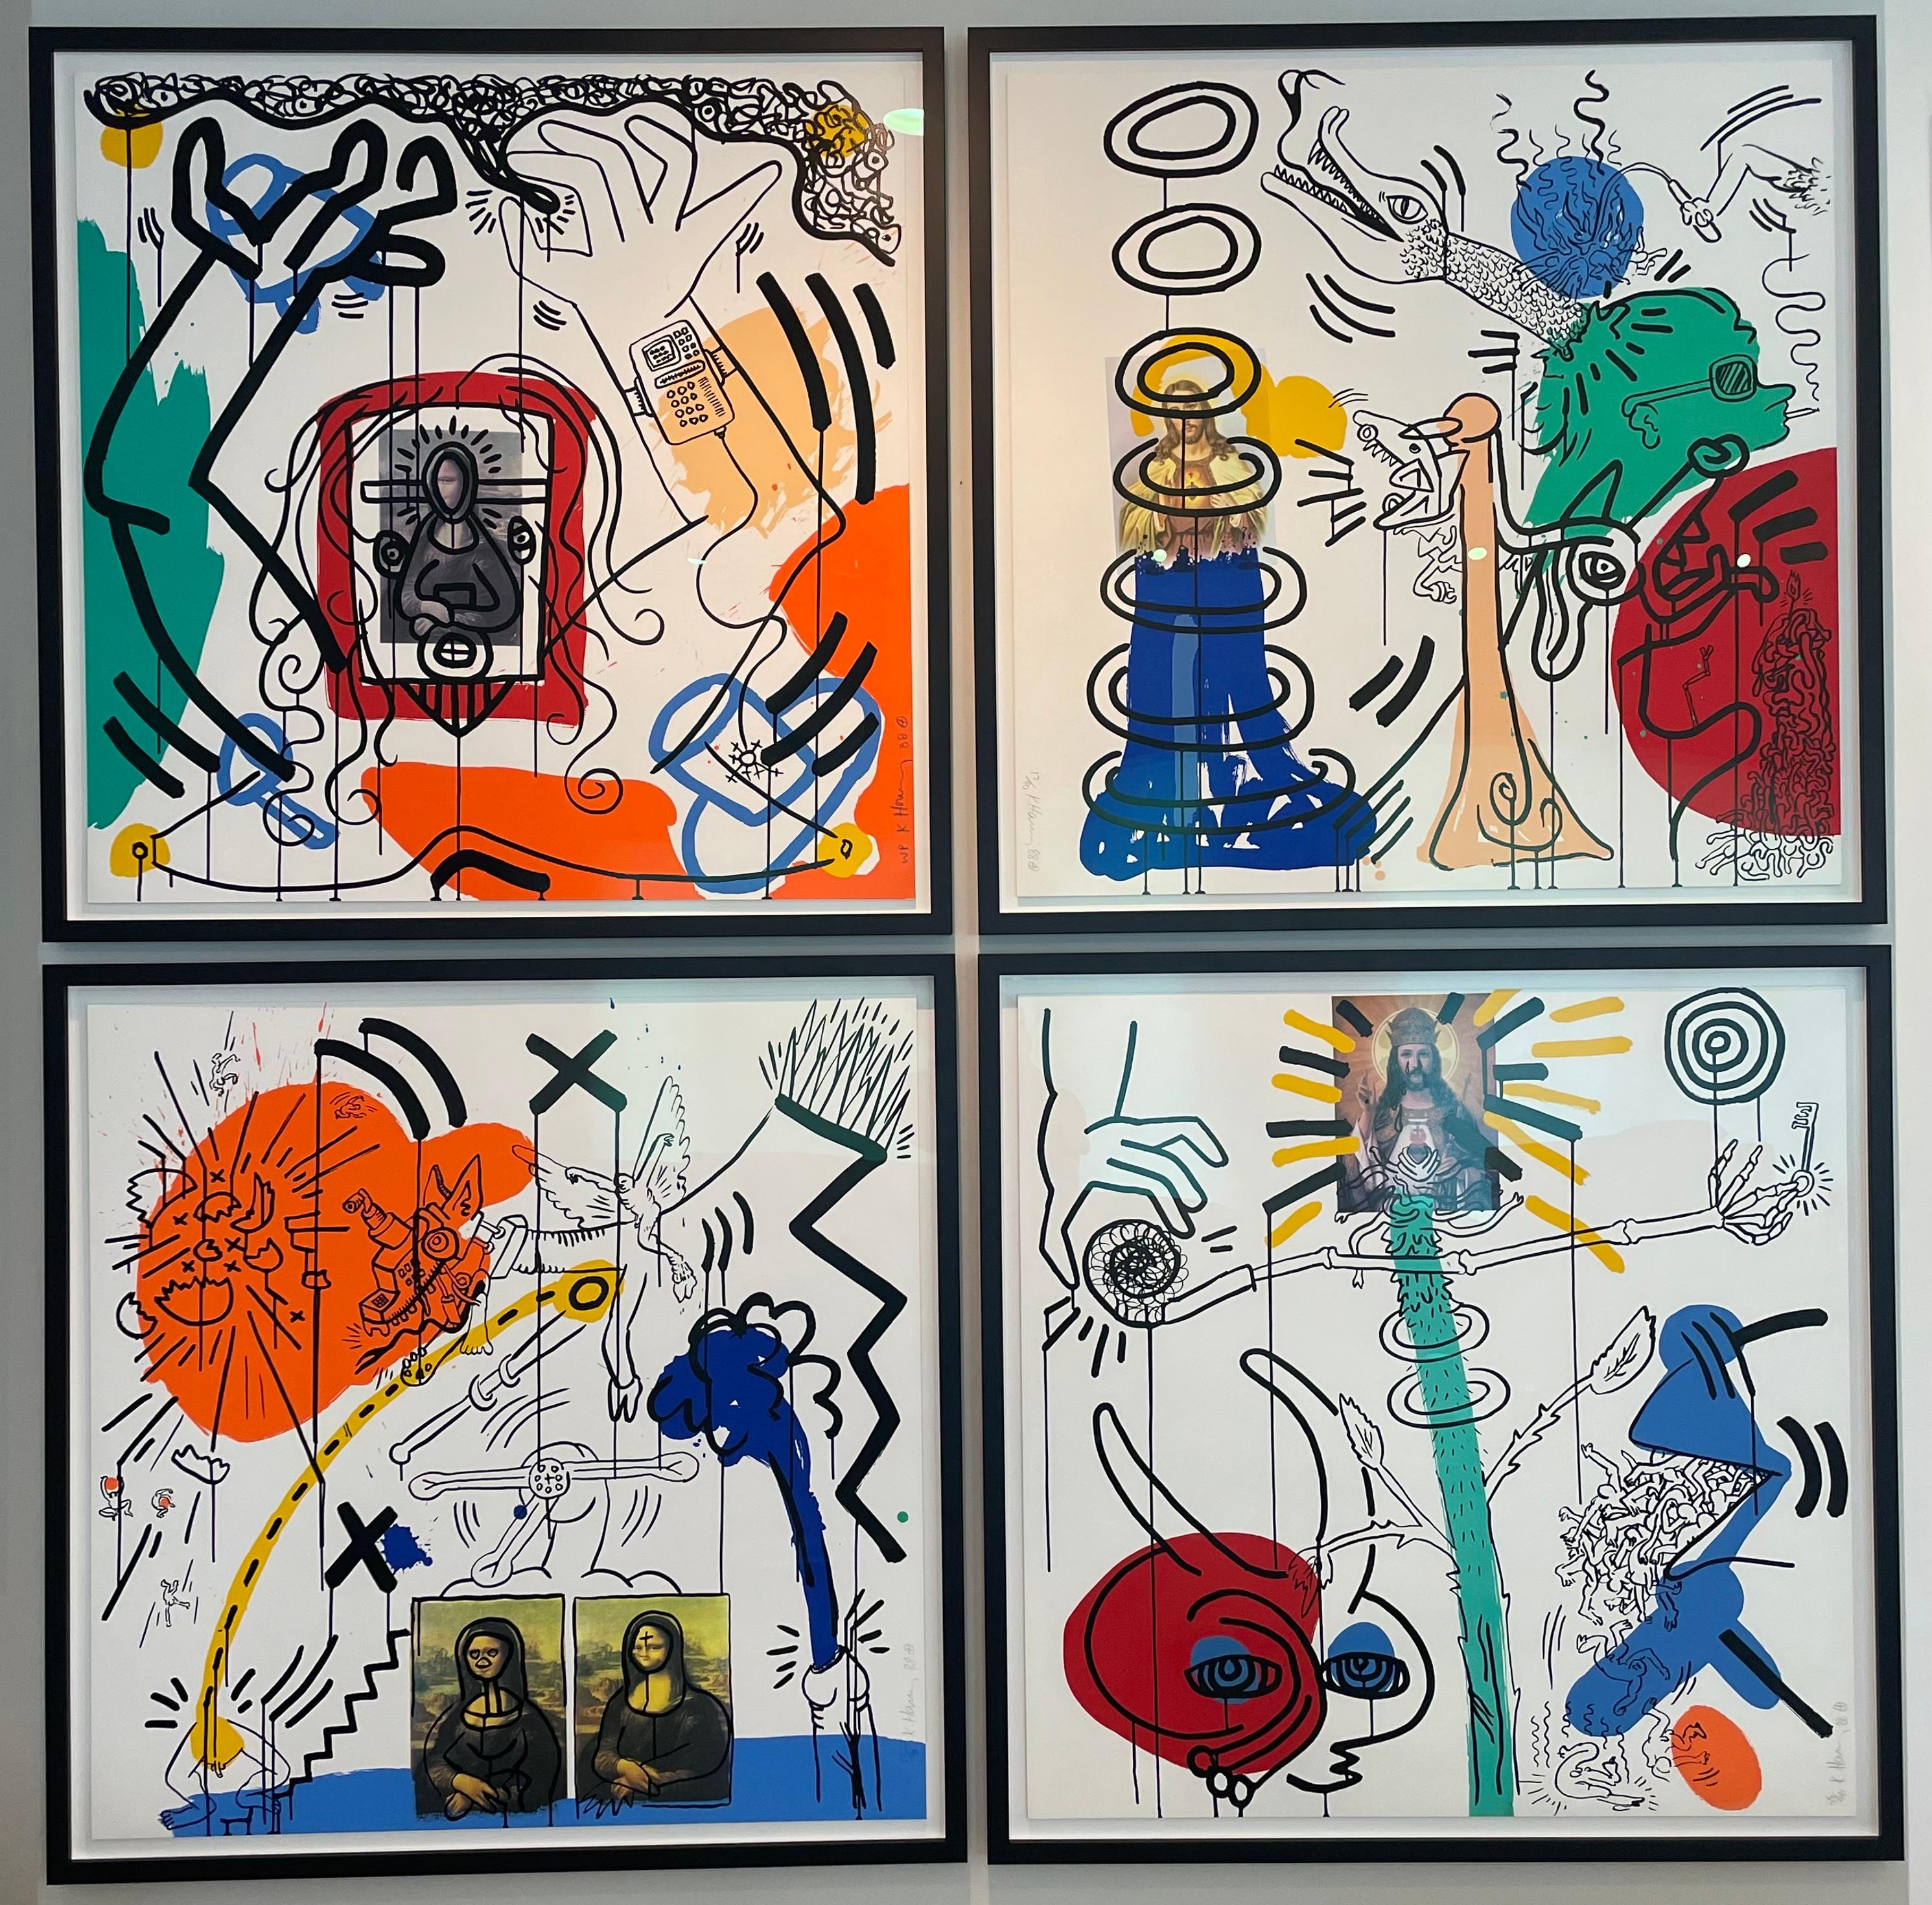 Künstler: Keith Haring 
Titel: Apokalypse 2
Größe:  38 × 38 in  96.5 × 96.5 cm
Medium: Farbsiebdruck auf Lenox Museum Board
Auflage: 22 von 90 
Jahr: 1988
Anmerkungen: Vom Künstler handsigniert, mit Bleistift signiert, nummeriert und datiert.